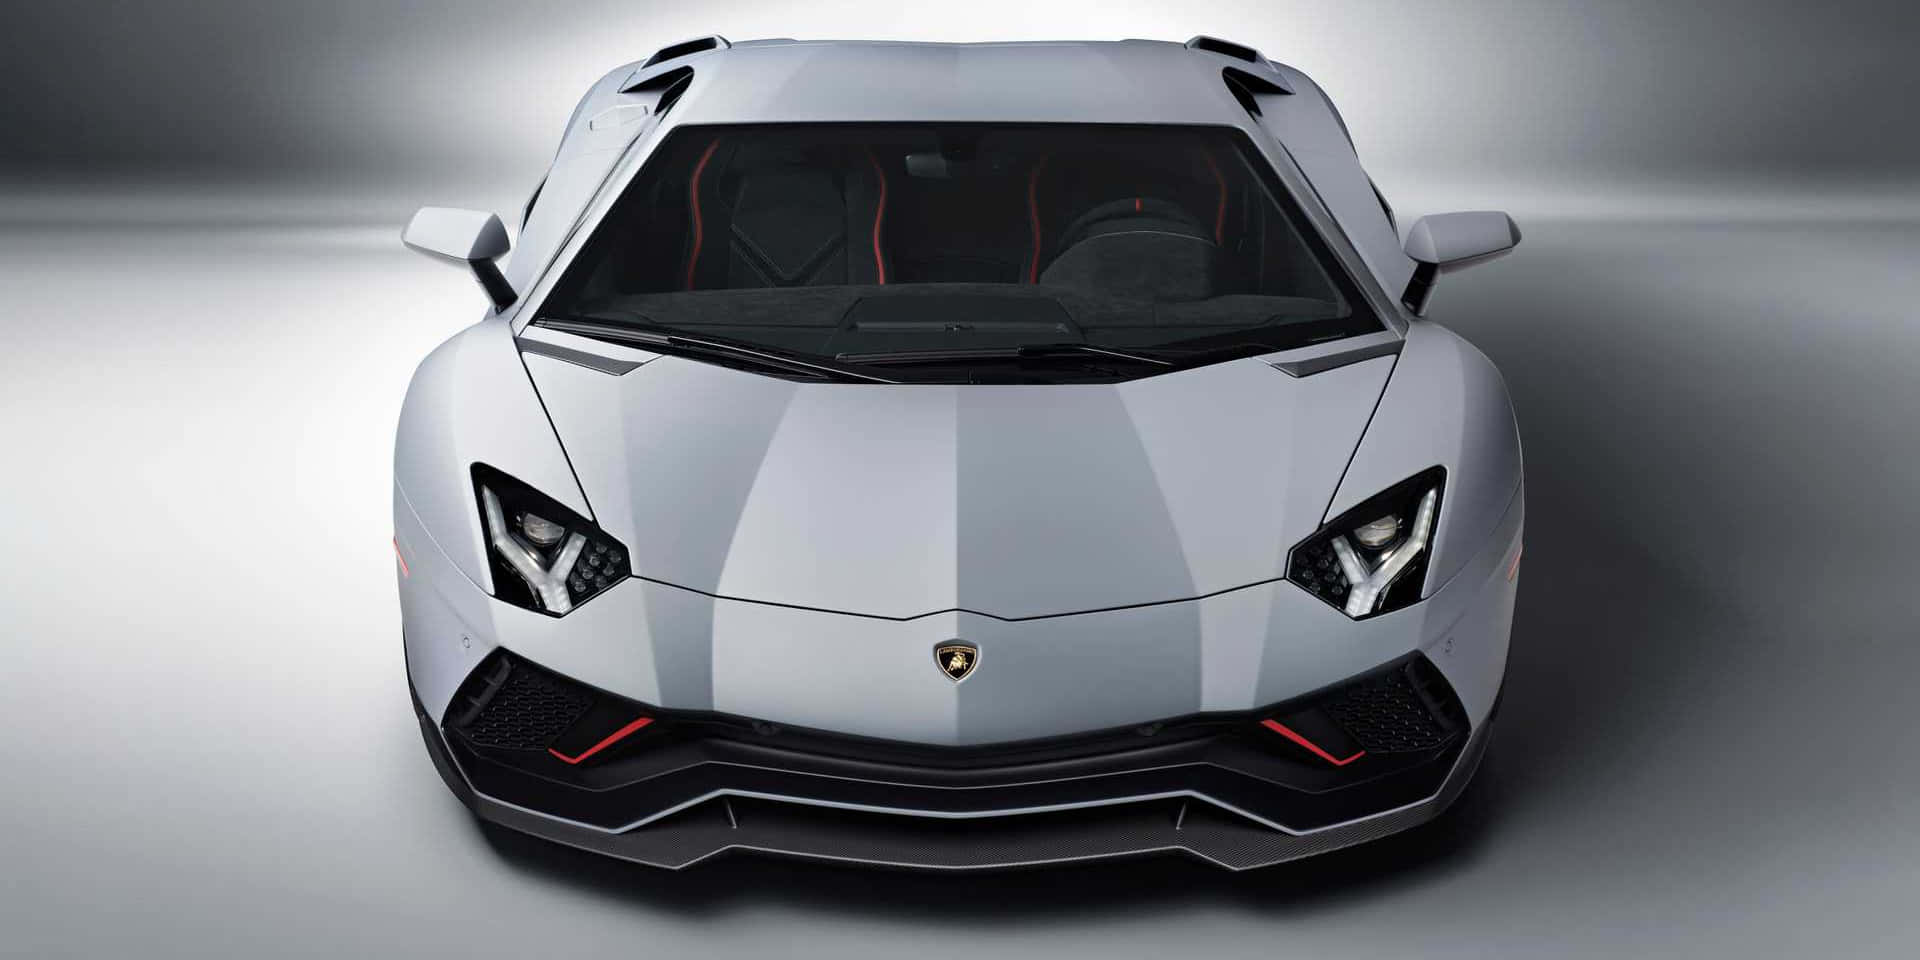 En hvid Lamborghini sportsvogn fra forsiden